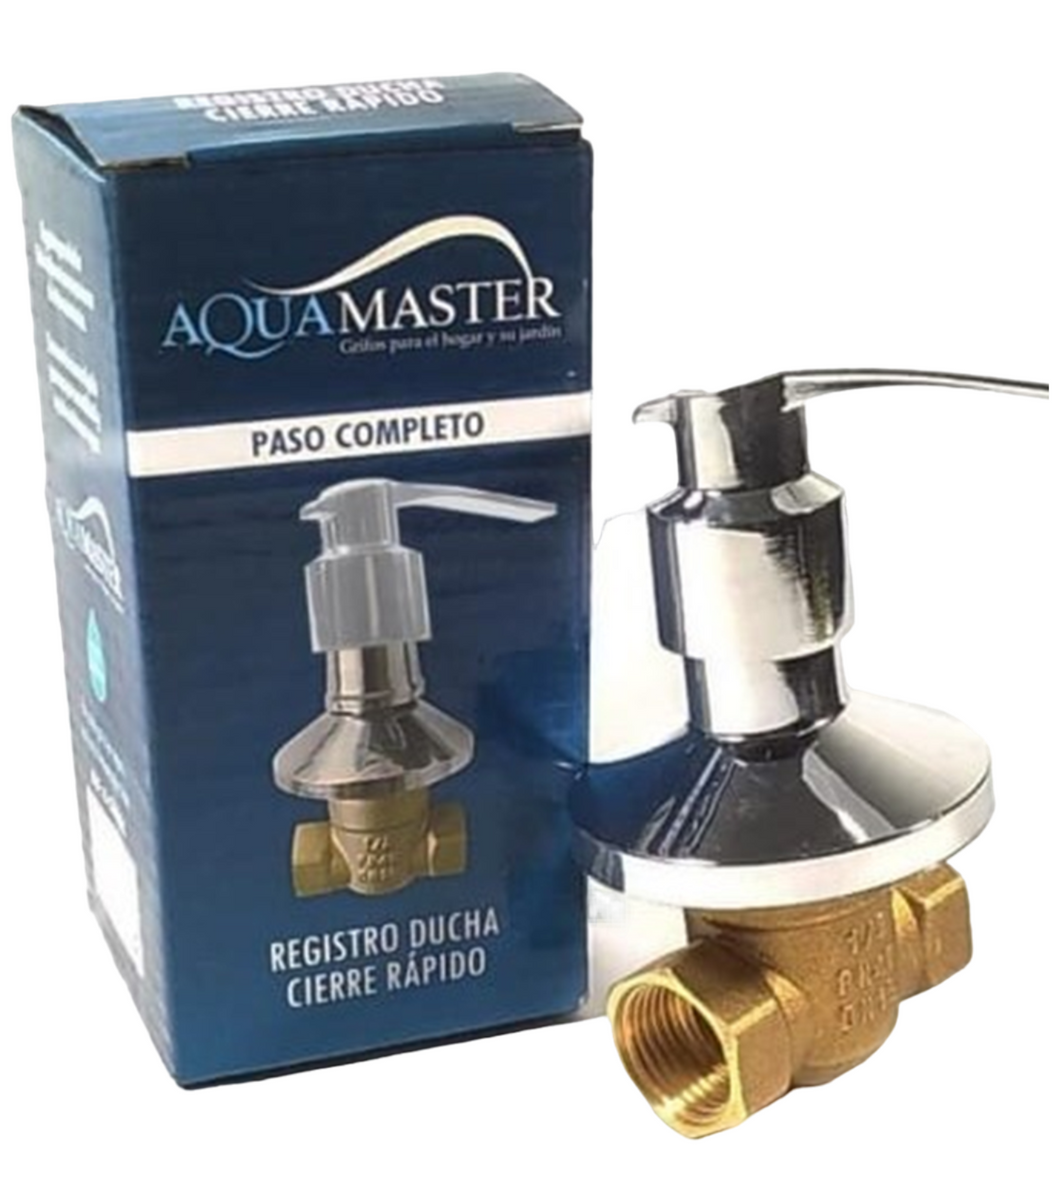 Registro Ducha Full paso Aquamaster